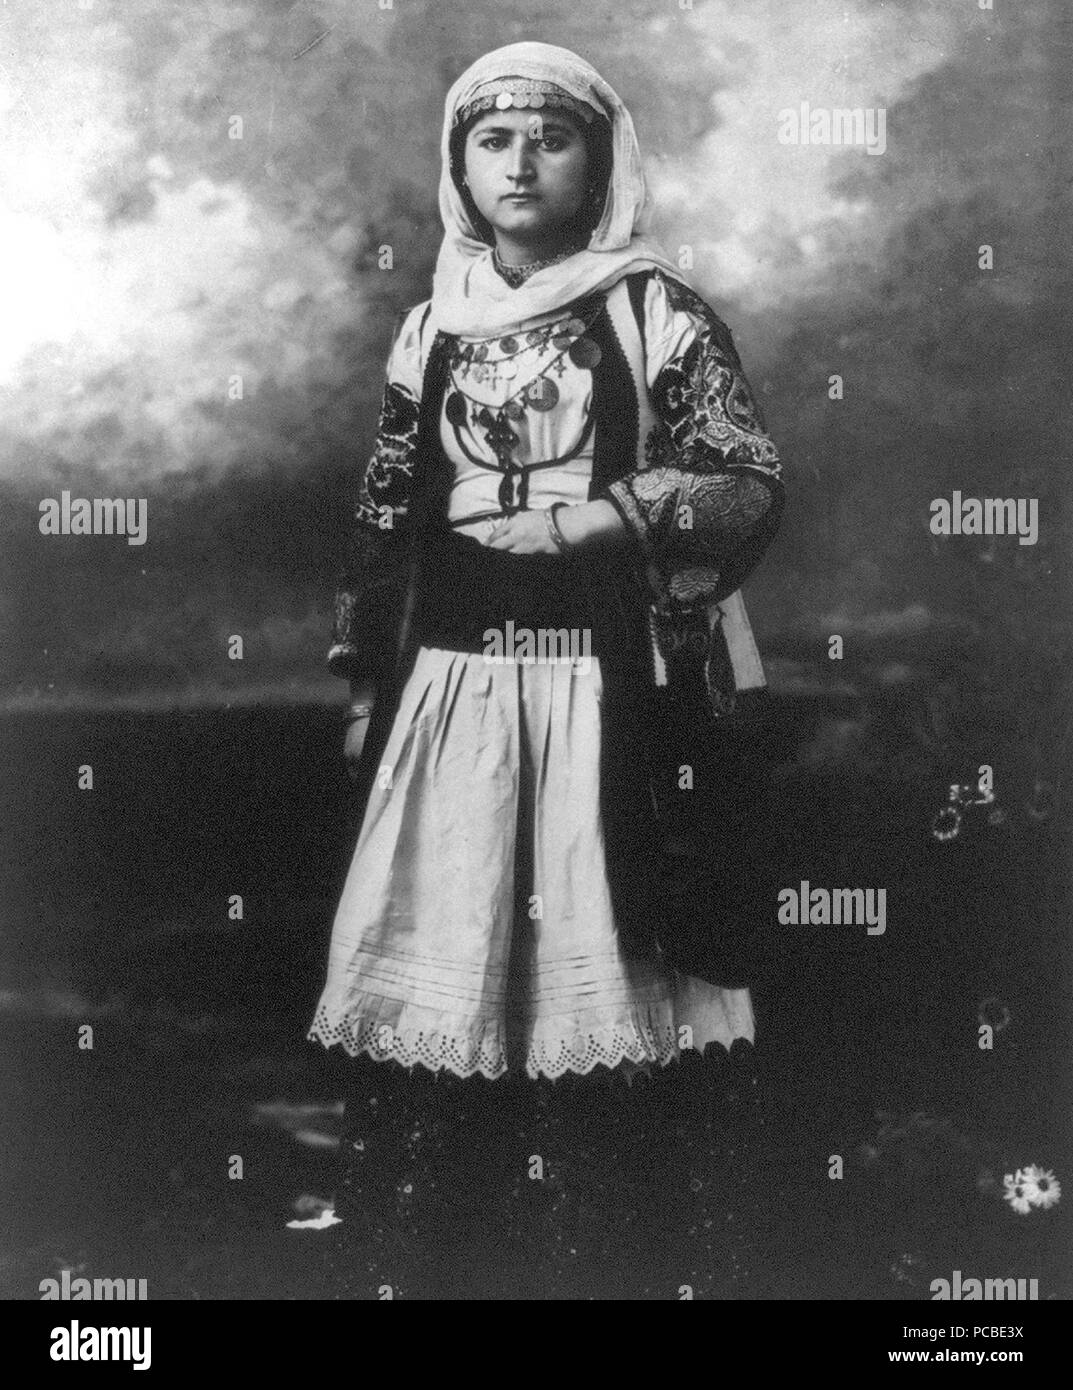 Frau in der alten griechischen Kostüm, 1920 Stockfotografie - Alamy